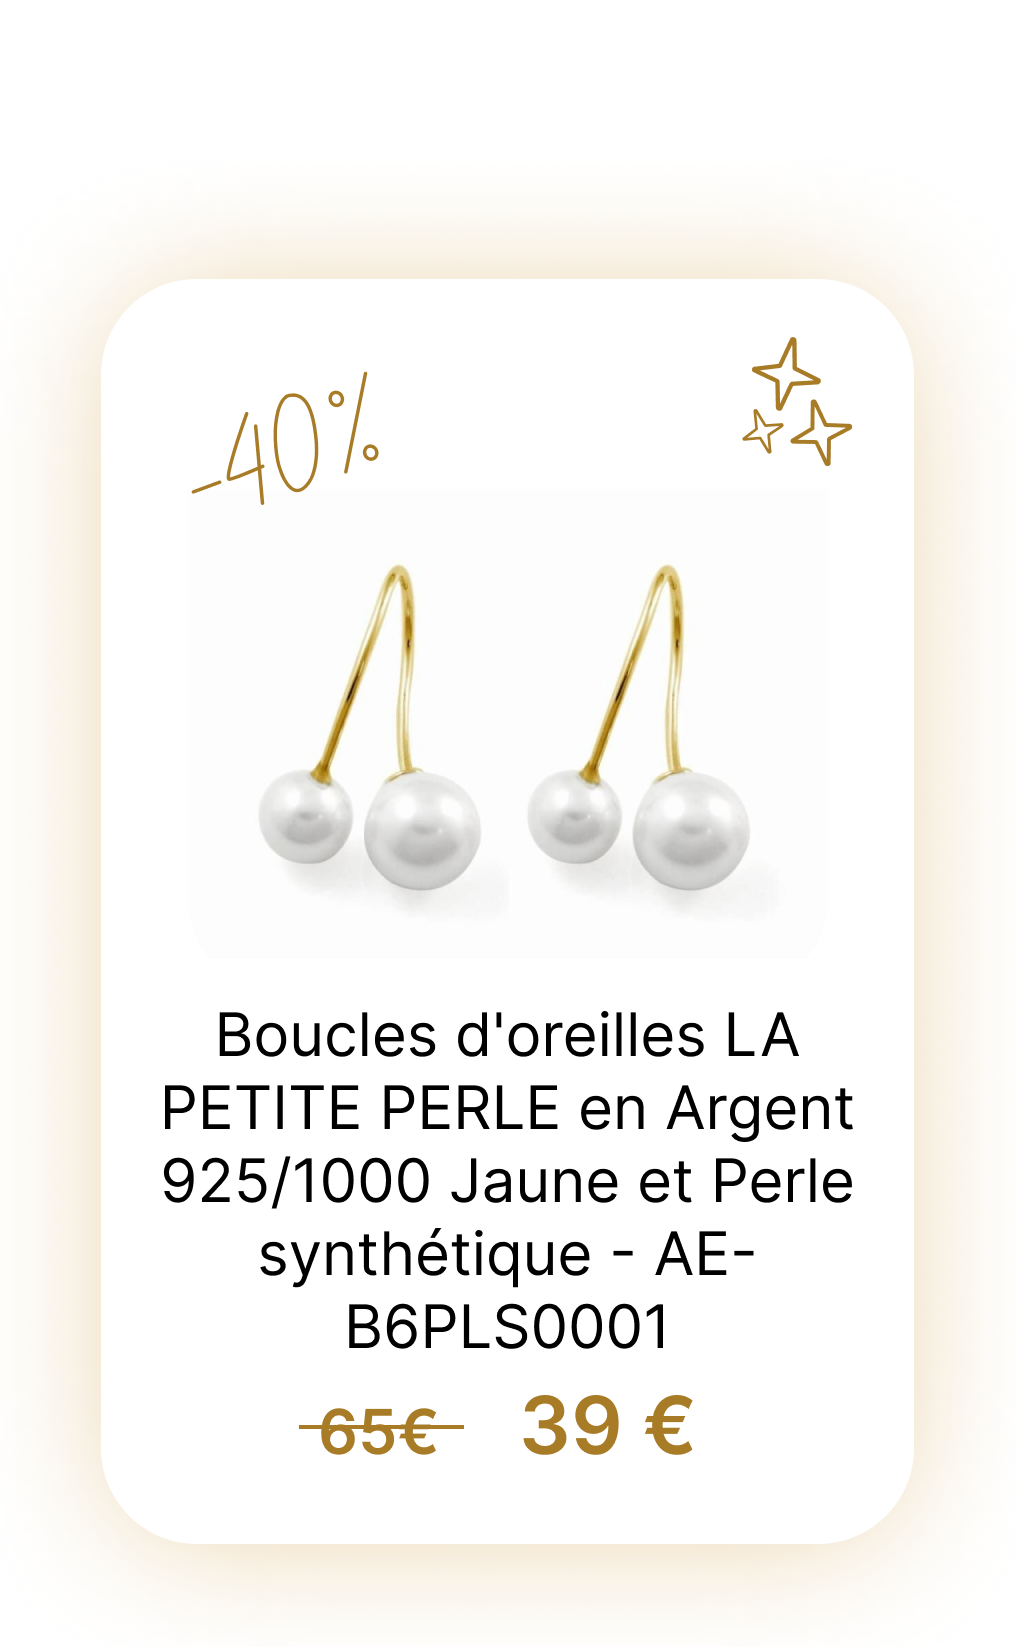 Boucles d'oreilles LA PETITE PERLE en Argent 9251000 Jaune et Perle synthétique - AE-B6PLS0001